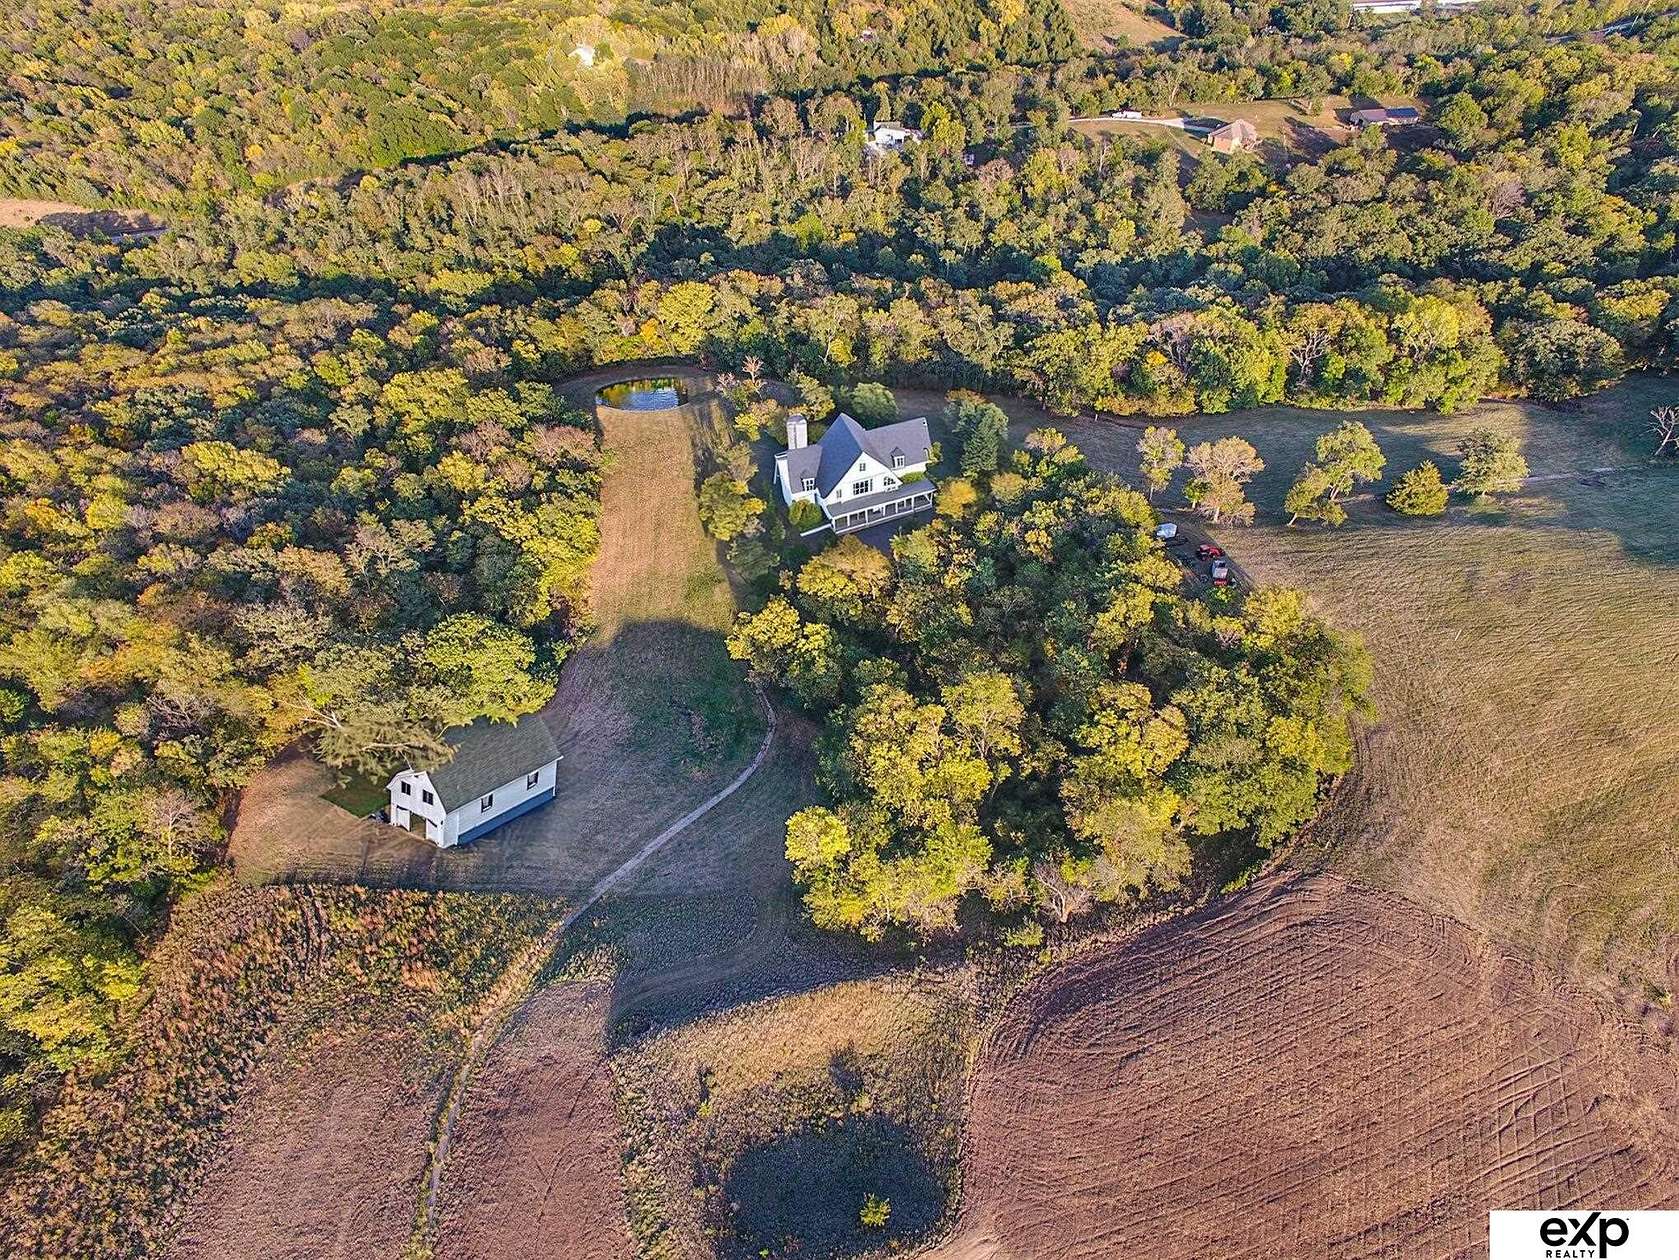 10 Acres of Residential Land for Sale in Plattsmouth, Nebraska